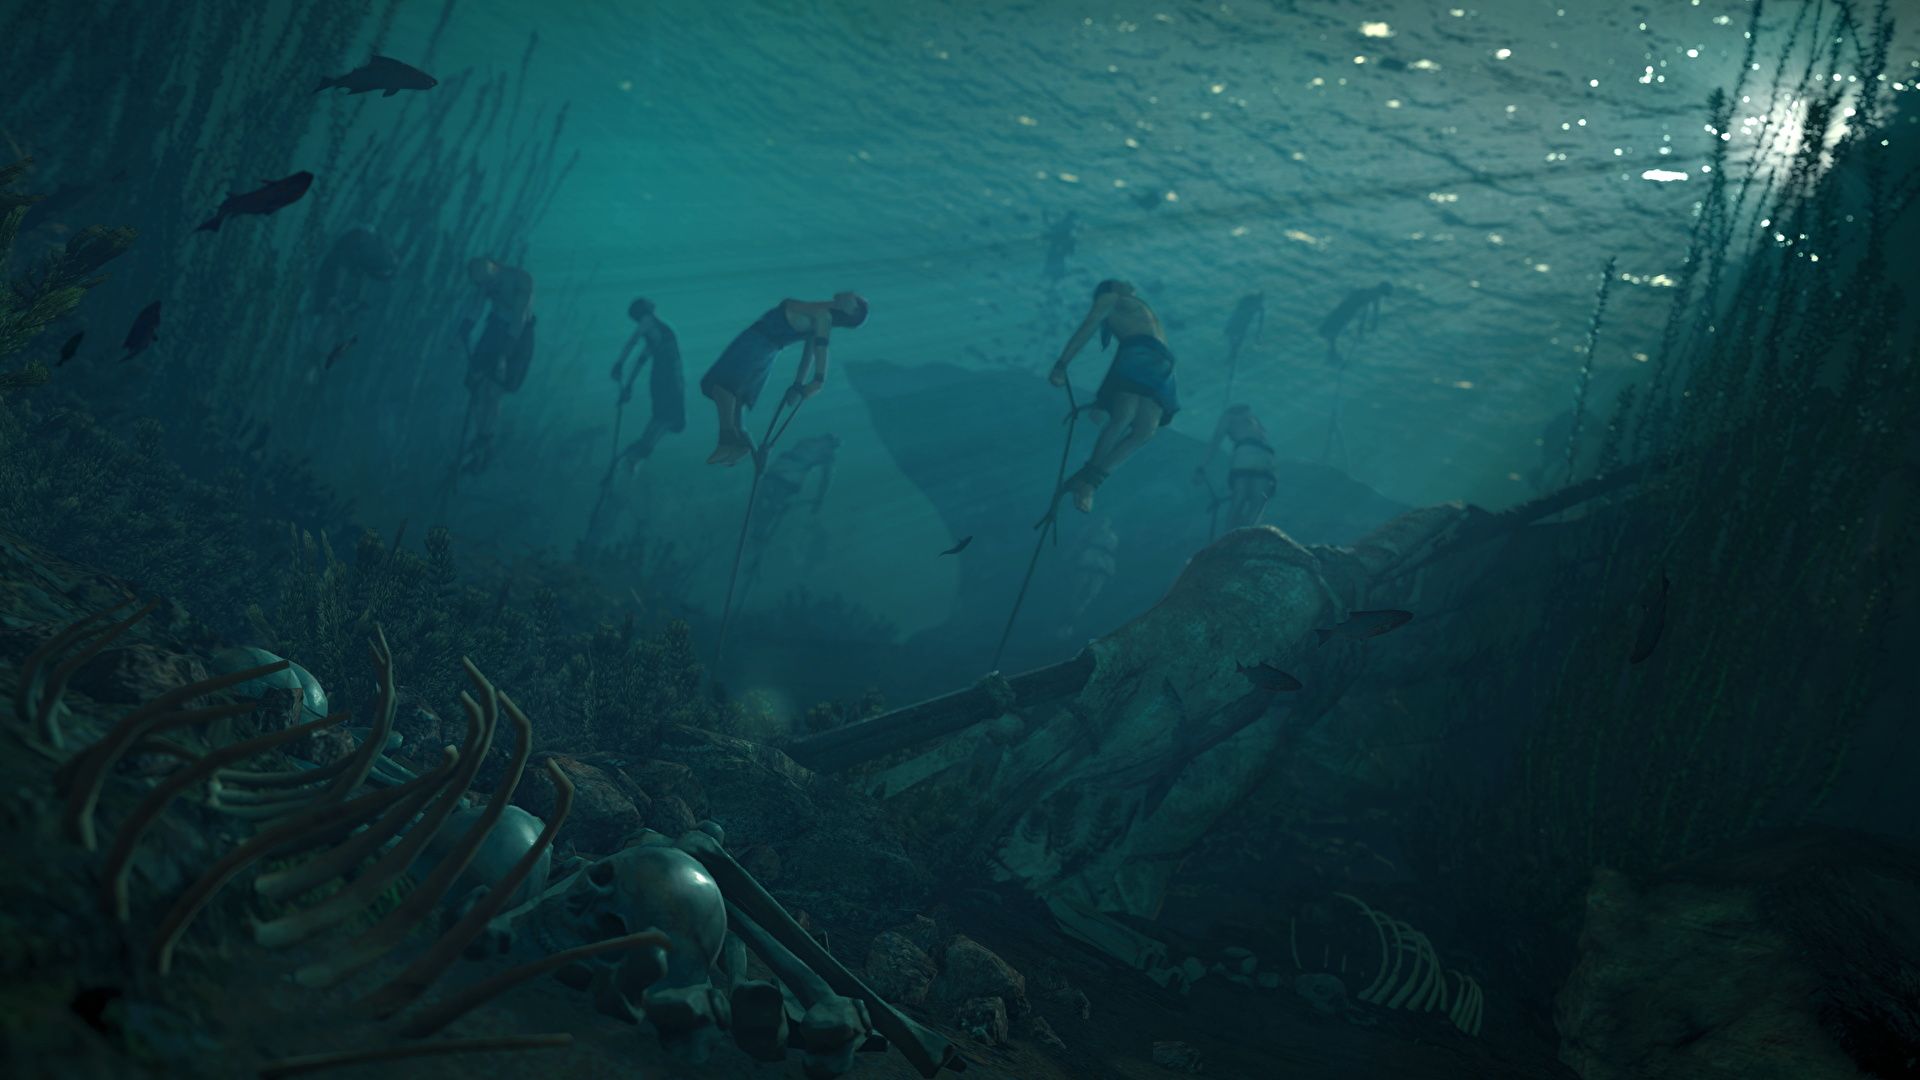  Meer Unterwasserwelt Hintergrundbild 1920x1080. Fotos Assassin's Creed Origins Unterwasserwelt Tot Leiche 1920x1080